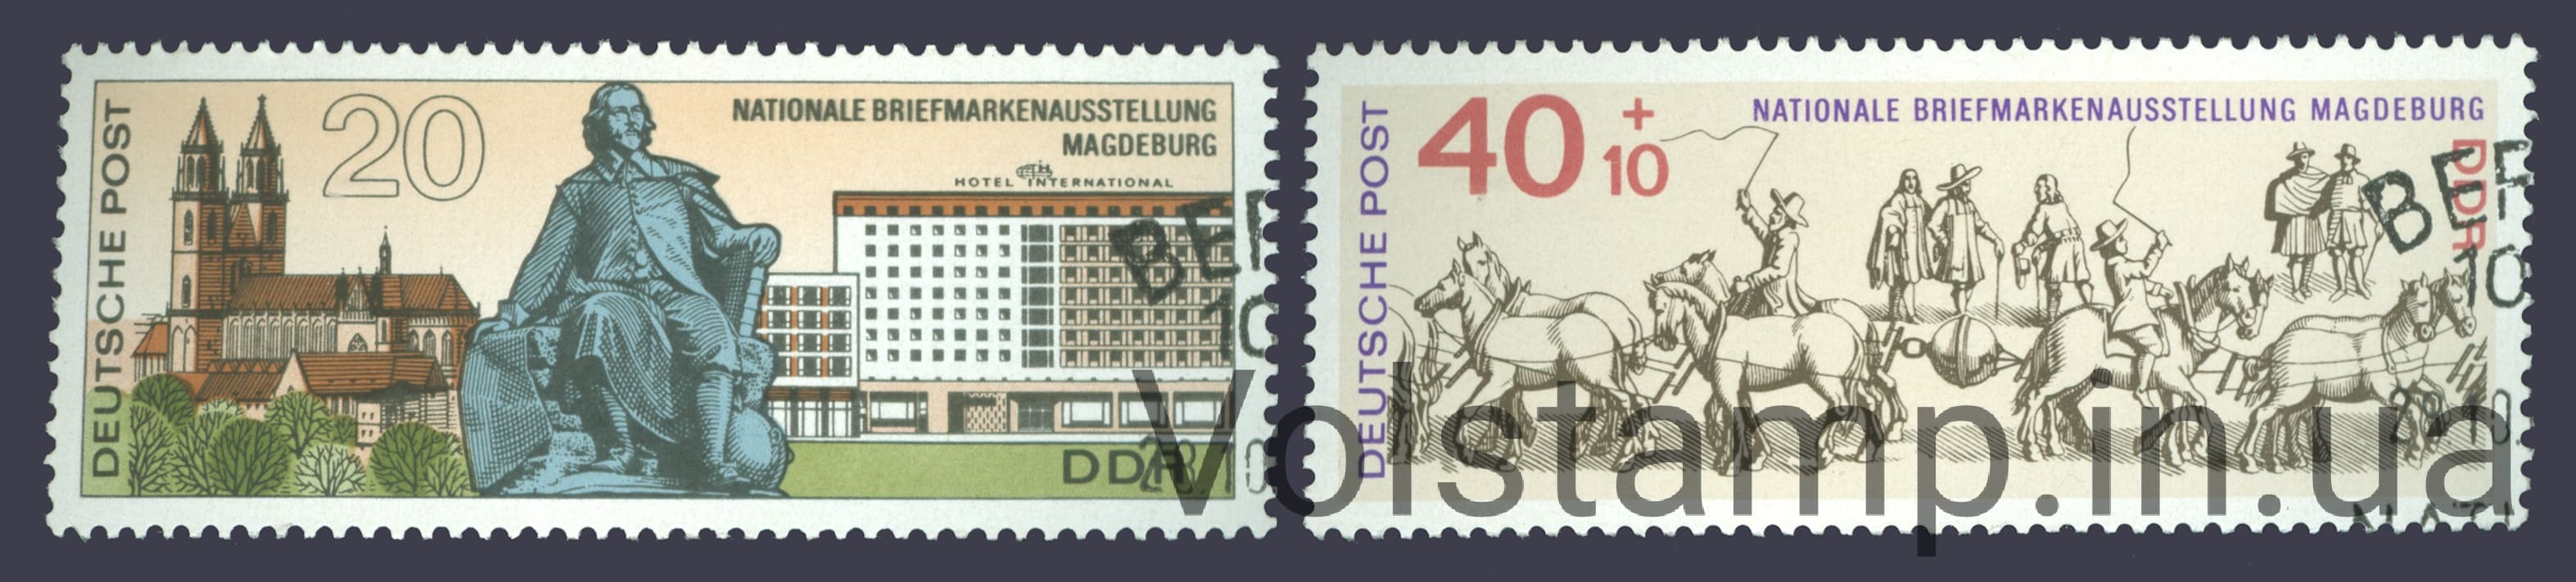 1969 ГДР Серия марок (Национальная выставка марок 20 лет ГДР) Гашеные №1513-1514